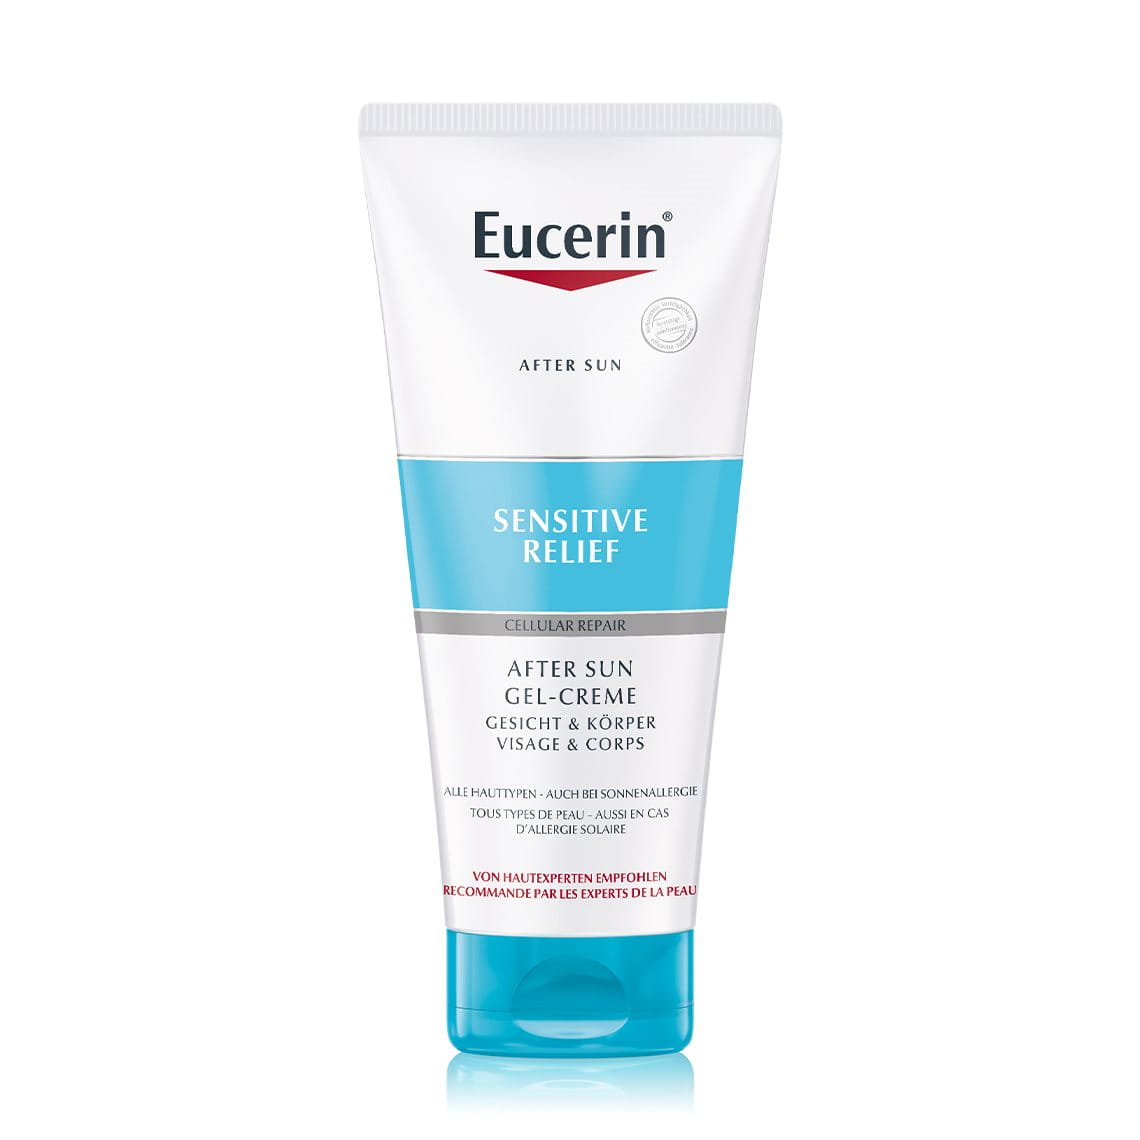 Eucerin After Sun Sensitive Relief Gel-Crème